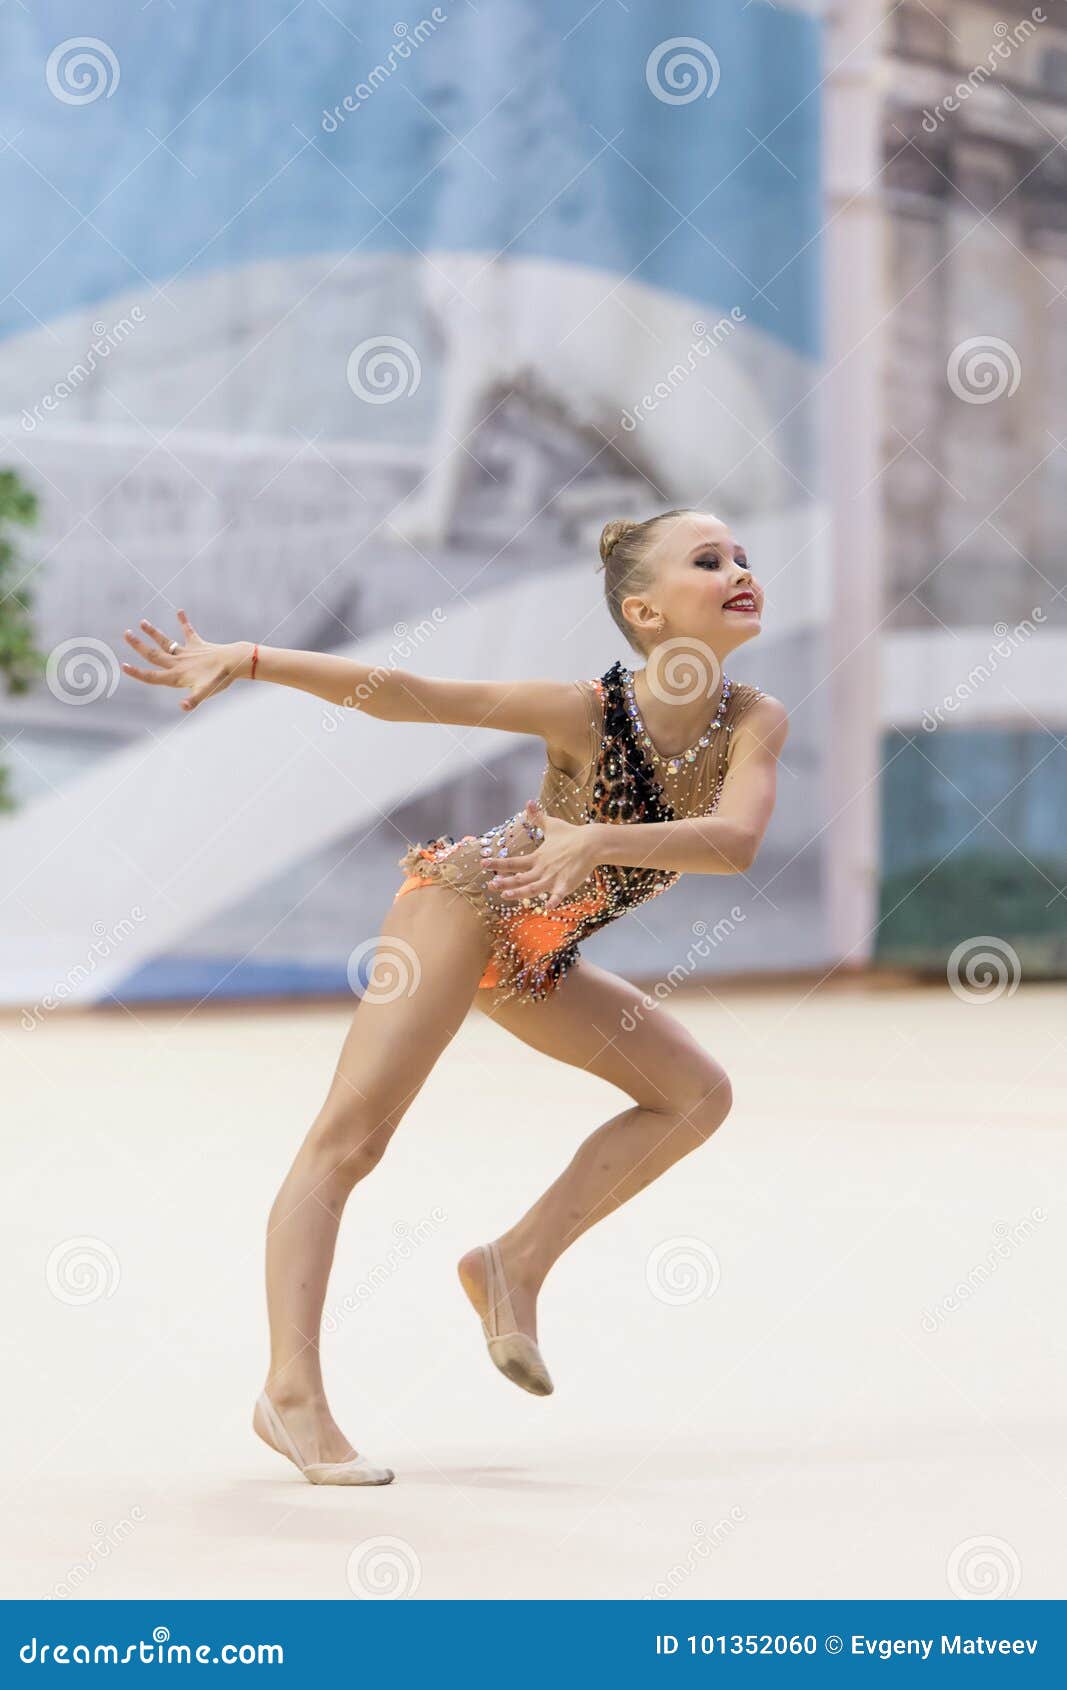 Russian teen girl gymnast